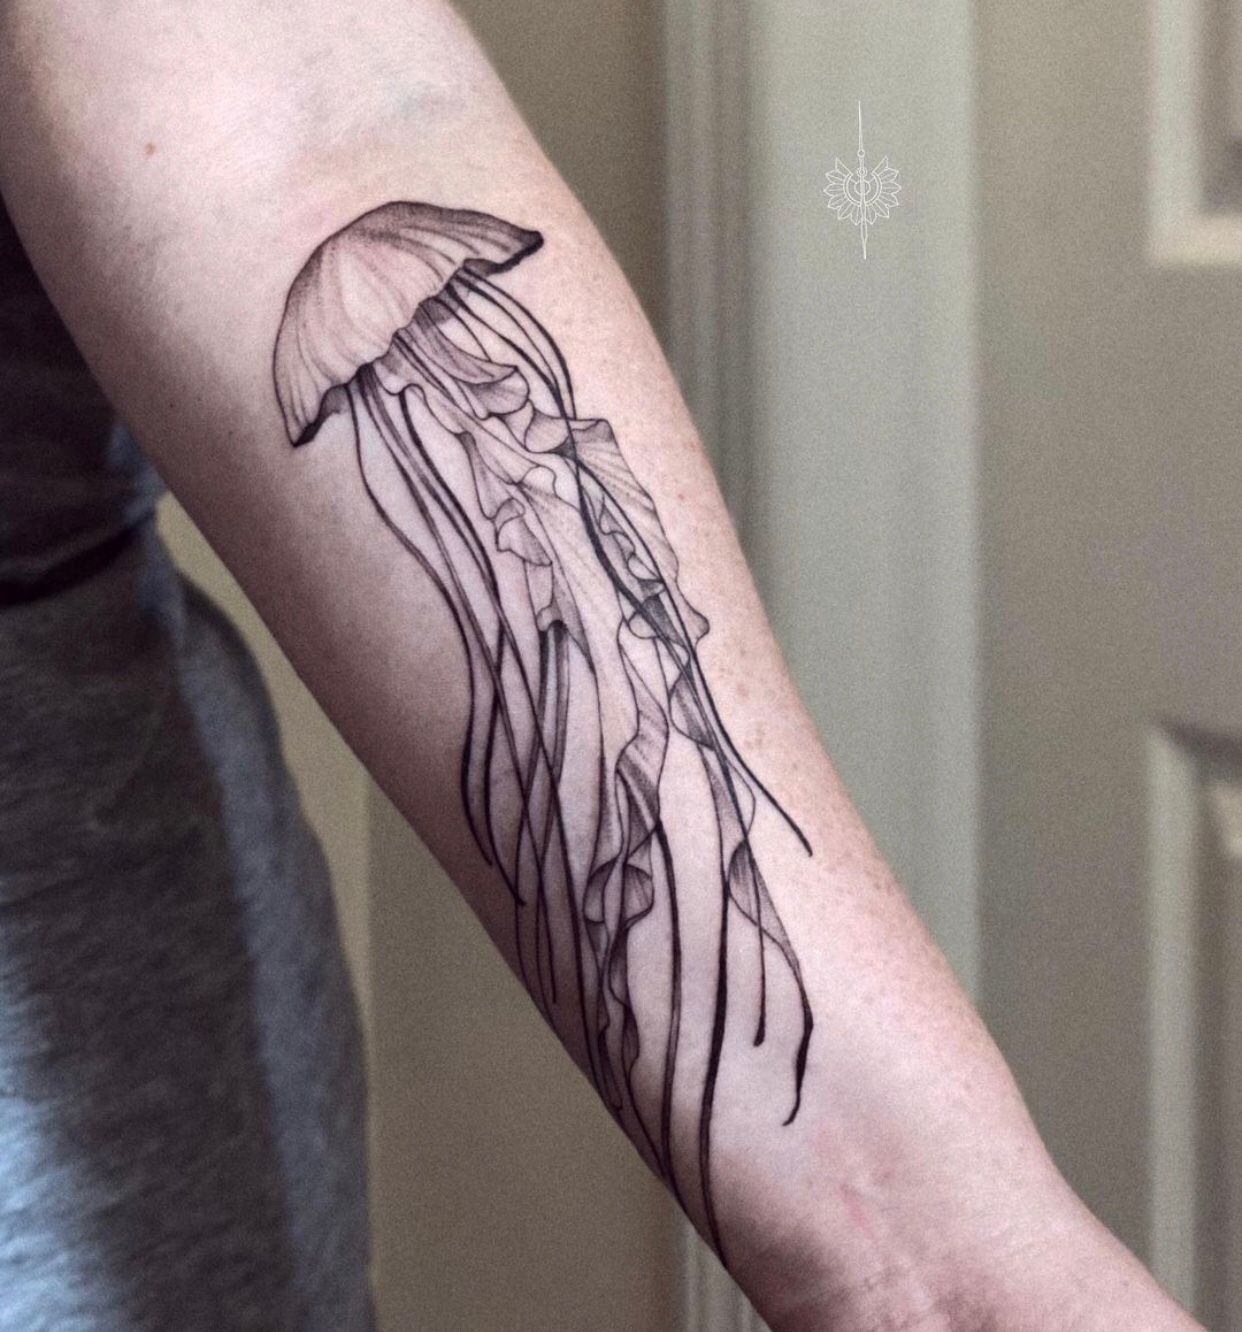 Jellyfish tattoo by Marek Hali | Post 23142